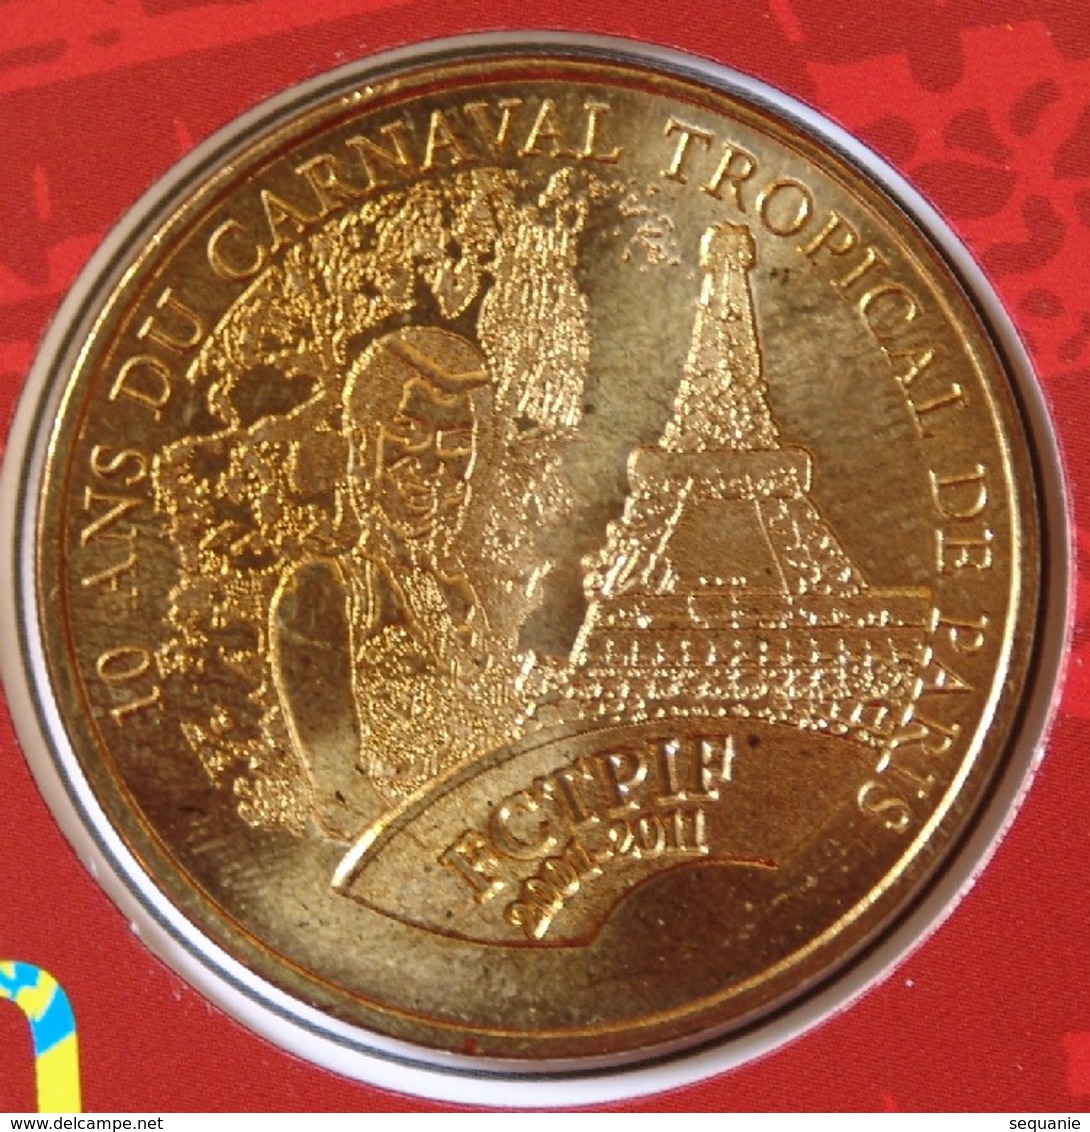 Médaille Touristique 10 ANS De Carnaval Tropical 2001/2011 - 2011